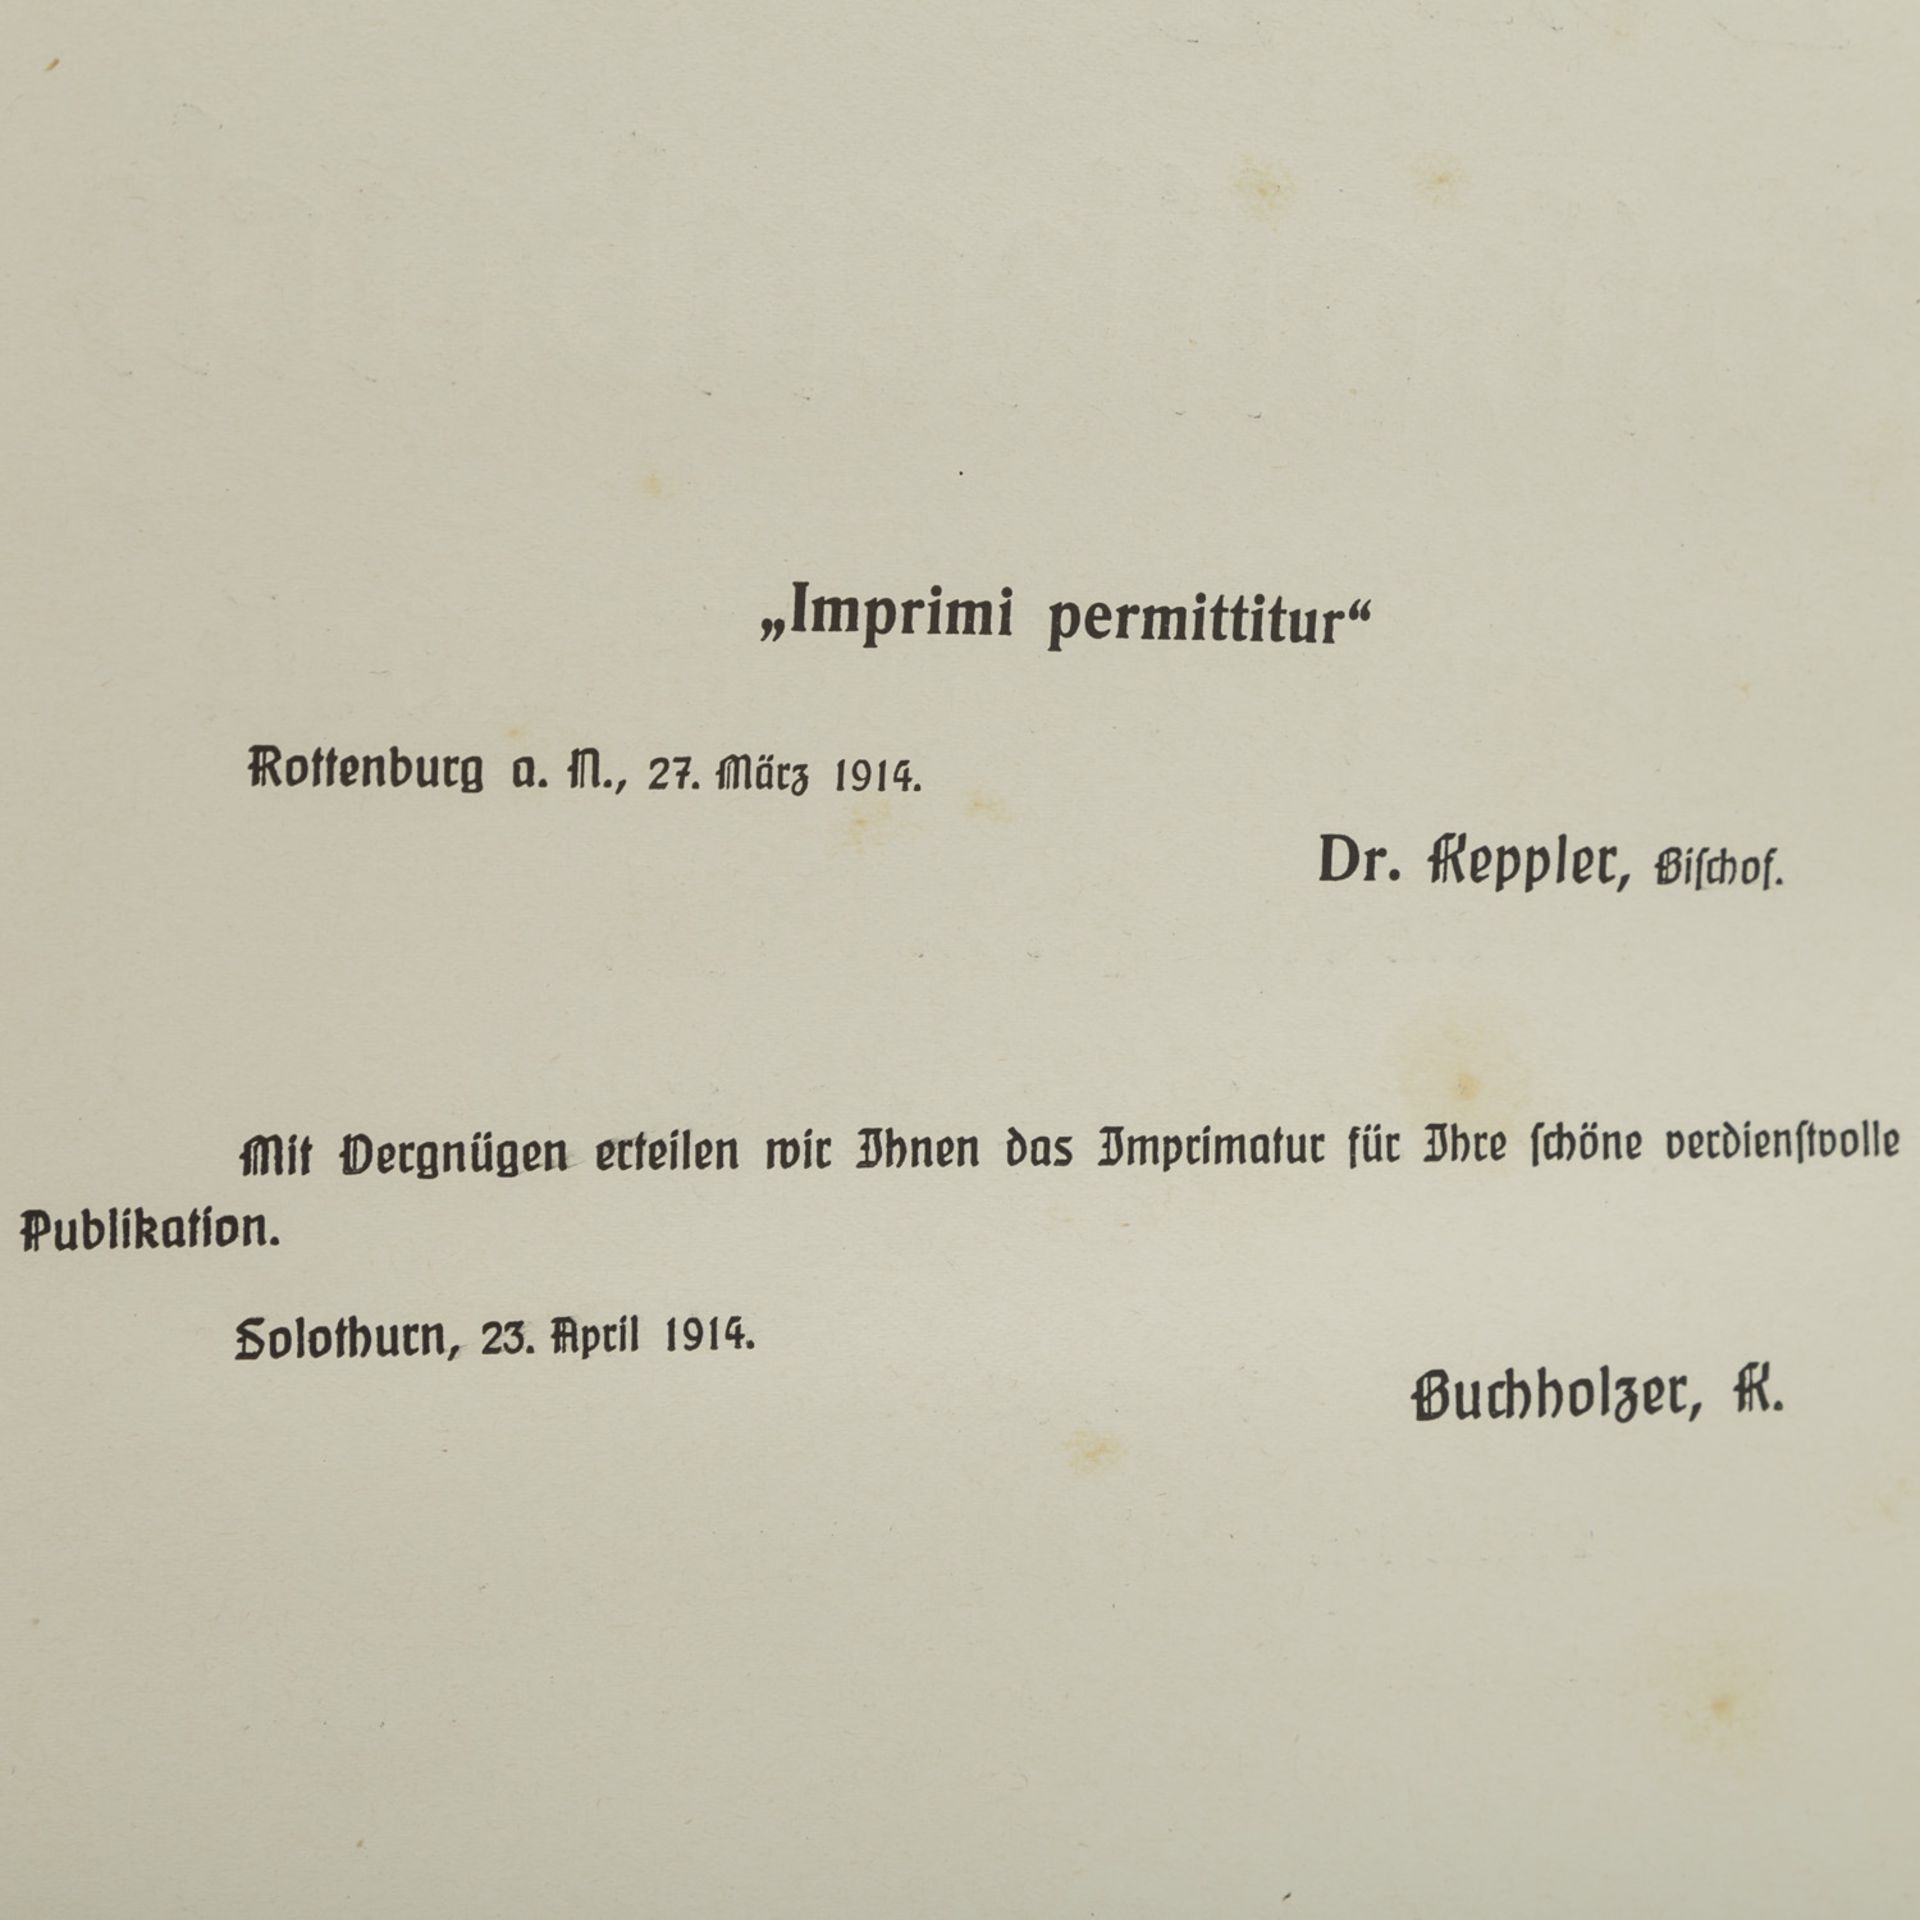 DAS GOLDENE KATHOLIKENBUCHFÜR DAS GLÄUBIGE VOLK von Dekan Fr. X. Wetzel. Wiesbaden 1914. Mit - Bild 4 aus 5